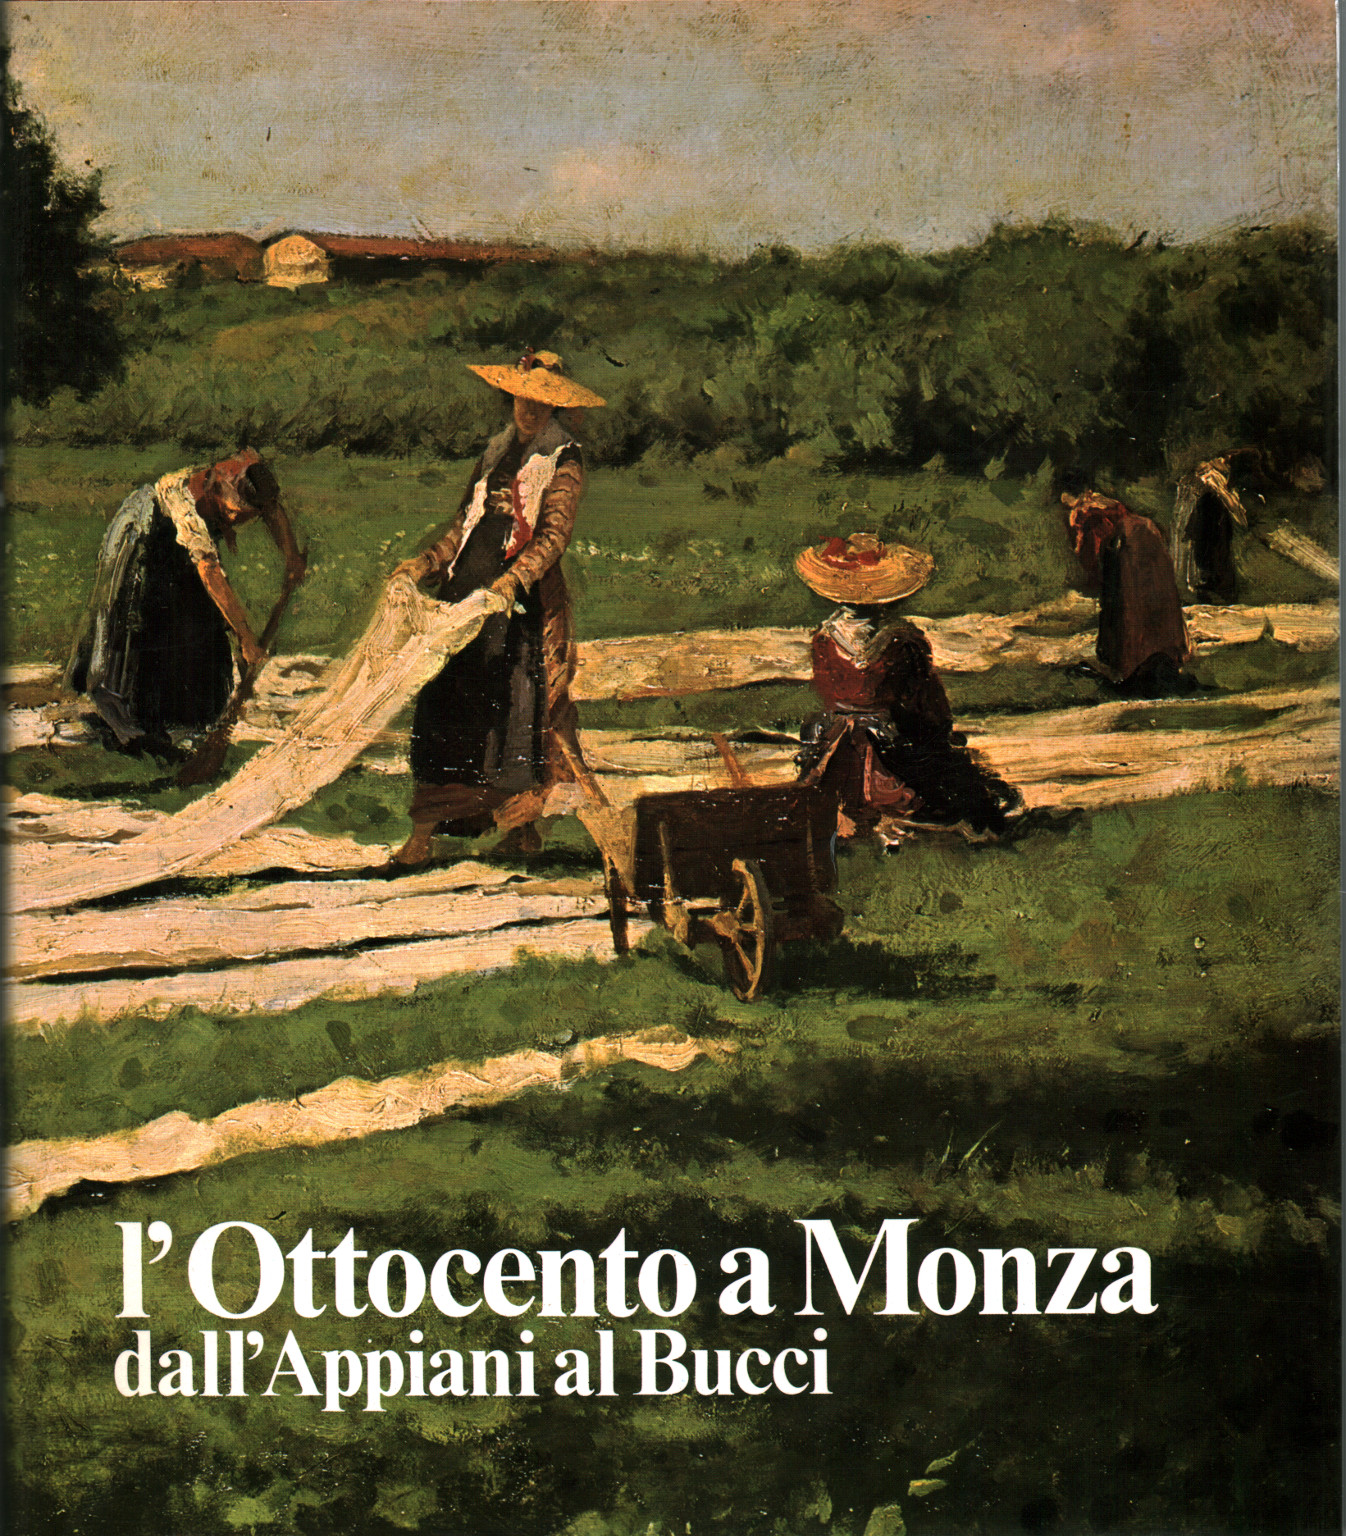 L'ottocento a Monza dall'Appiani al Bucci, s.a.